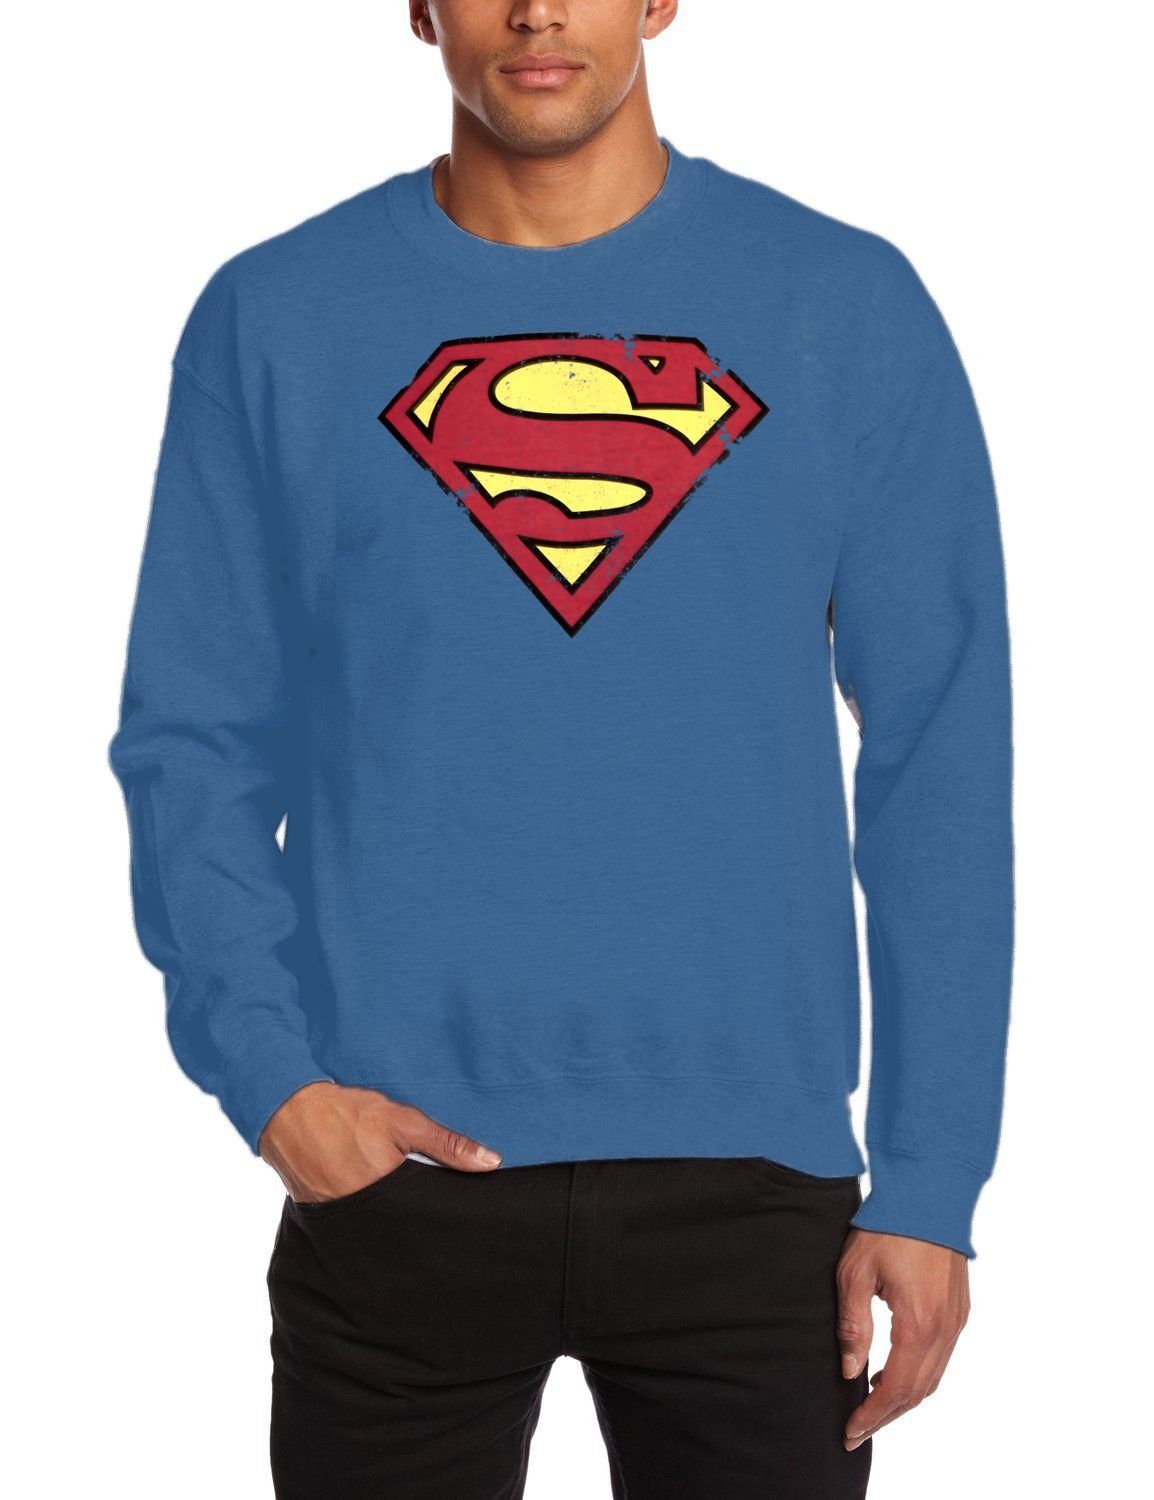 Superman Sweatshirt SUPERMAN SWEATSHIRT crew neck Pullover Pulli Jugendliche + Erwachsene denim blau Logo